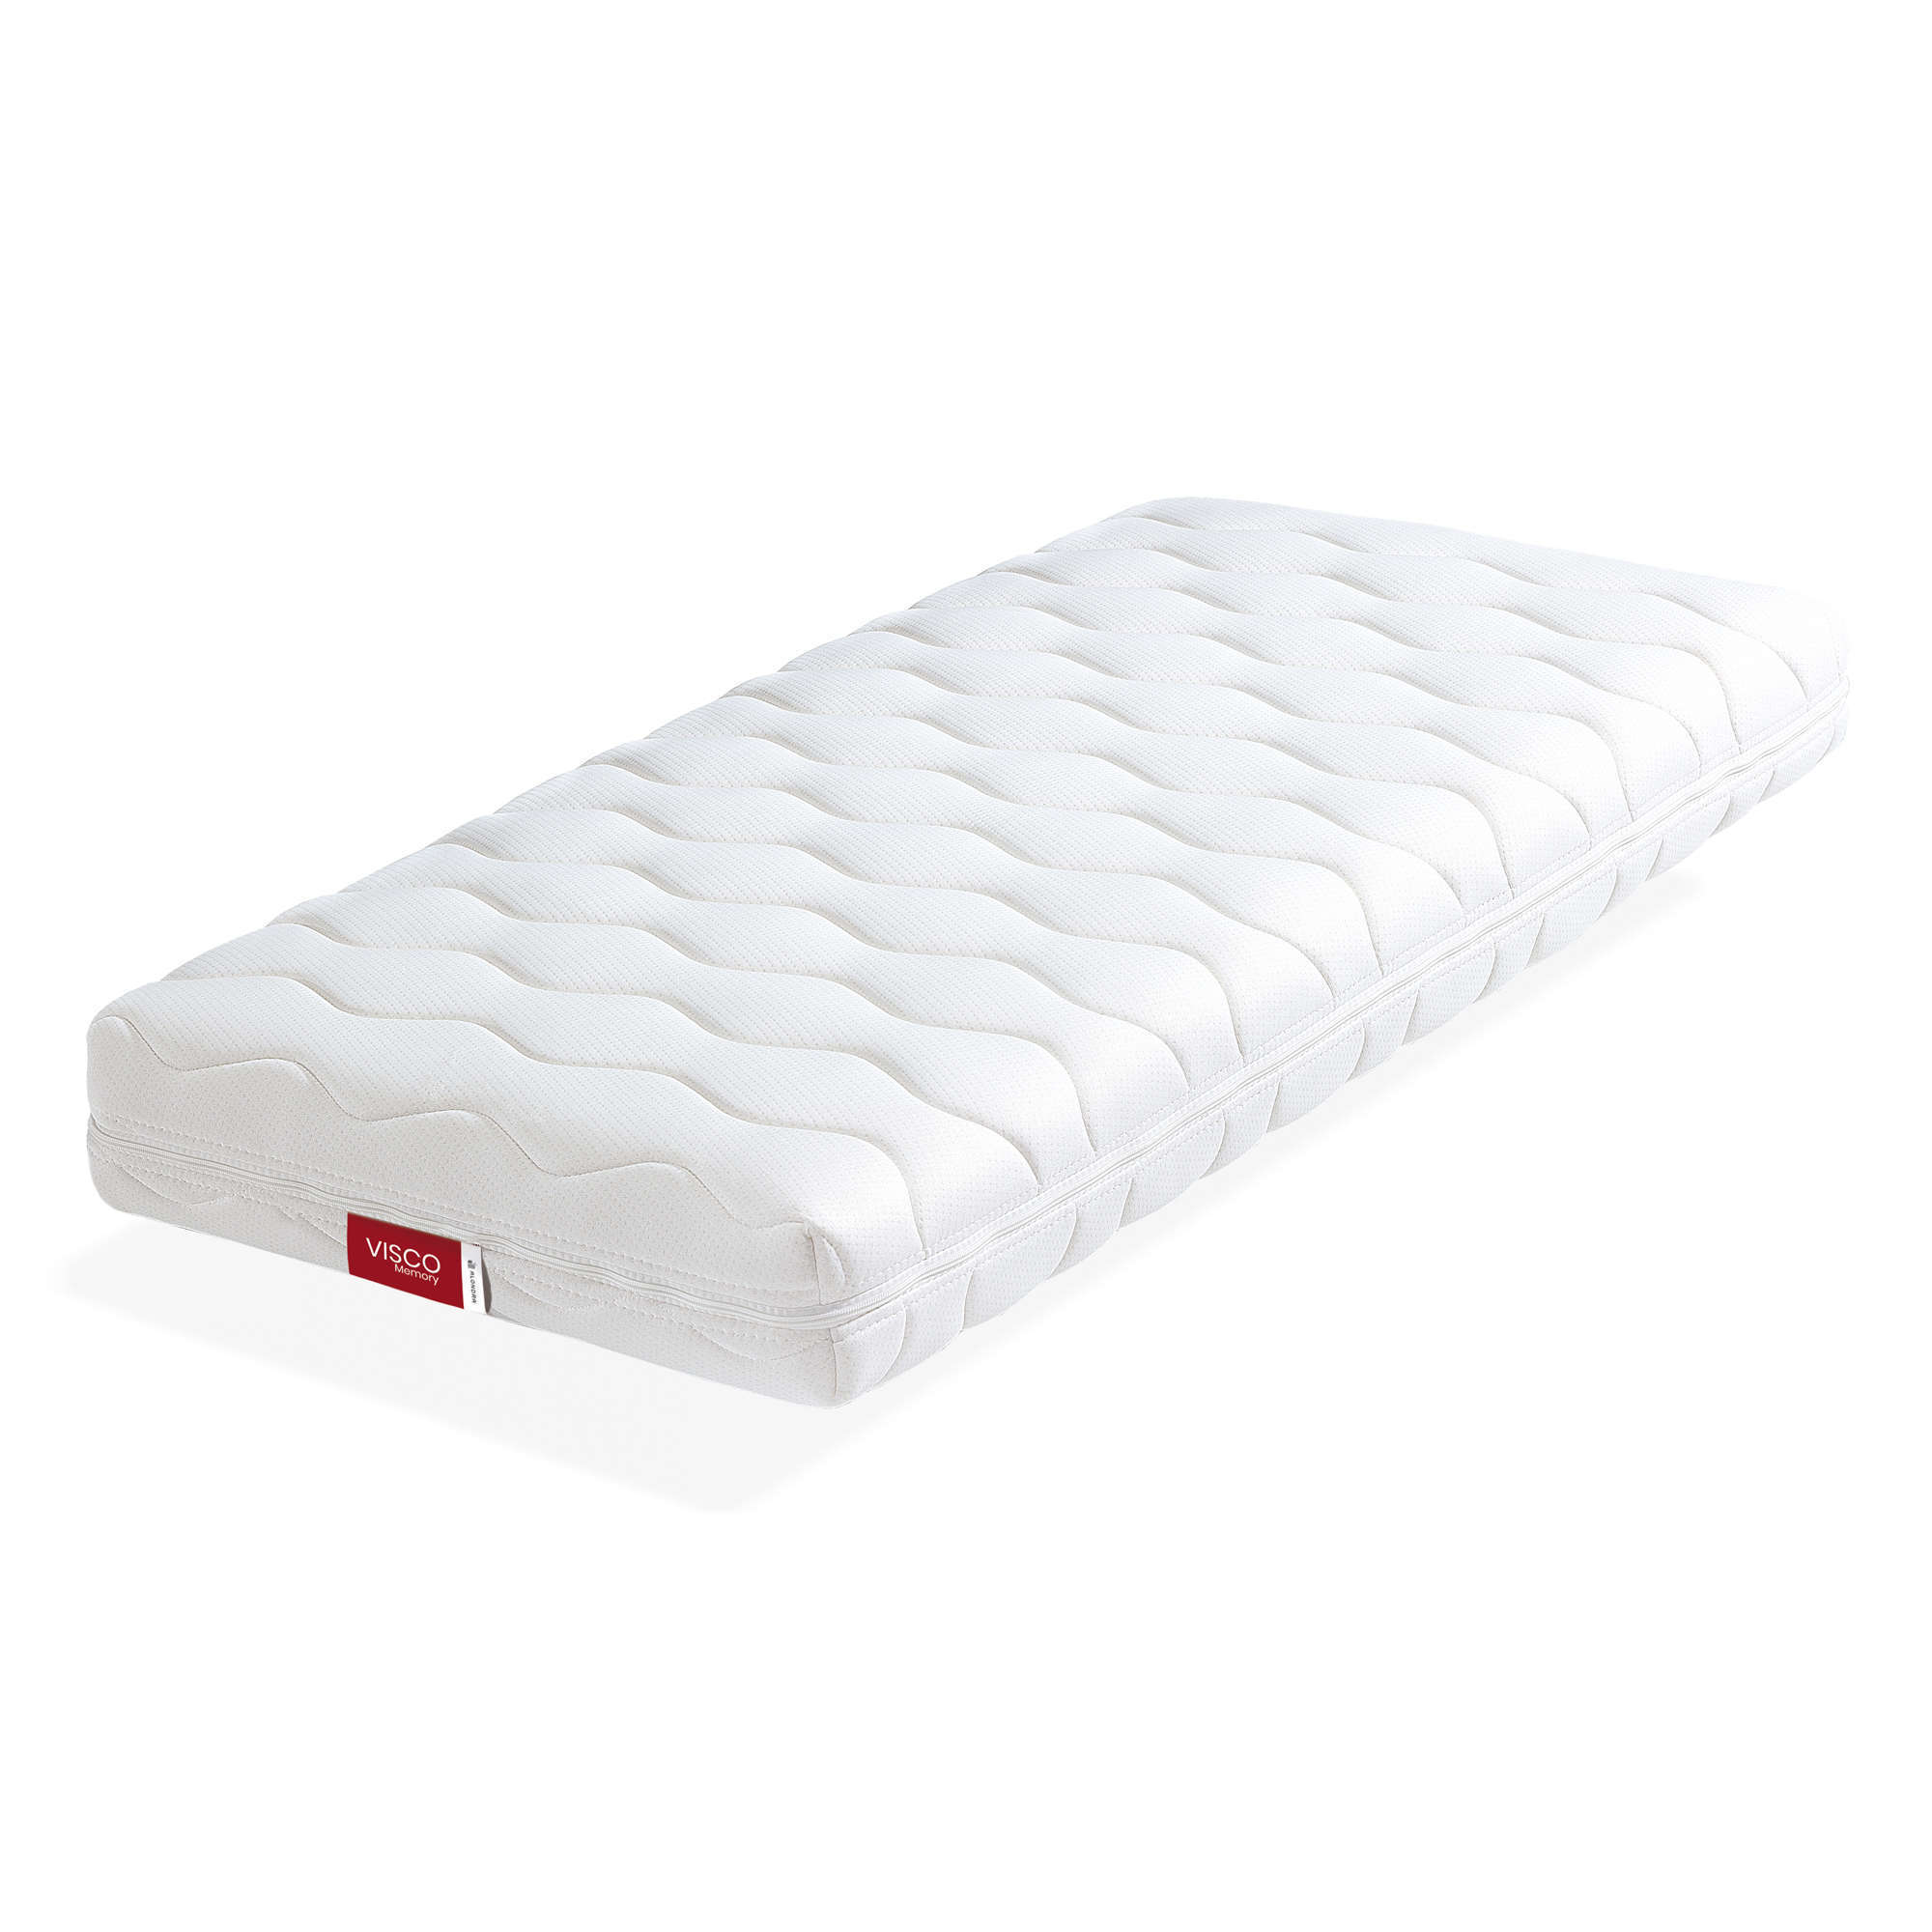 Memory foam mattress for cot and montessori bed Alondra